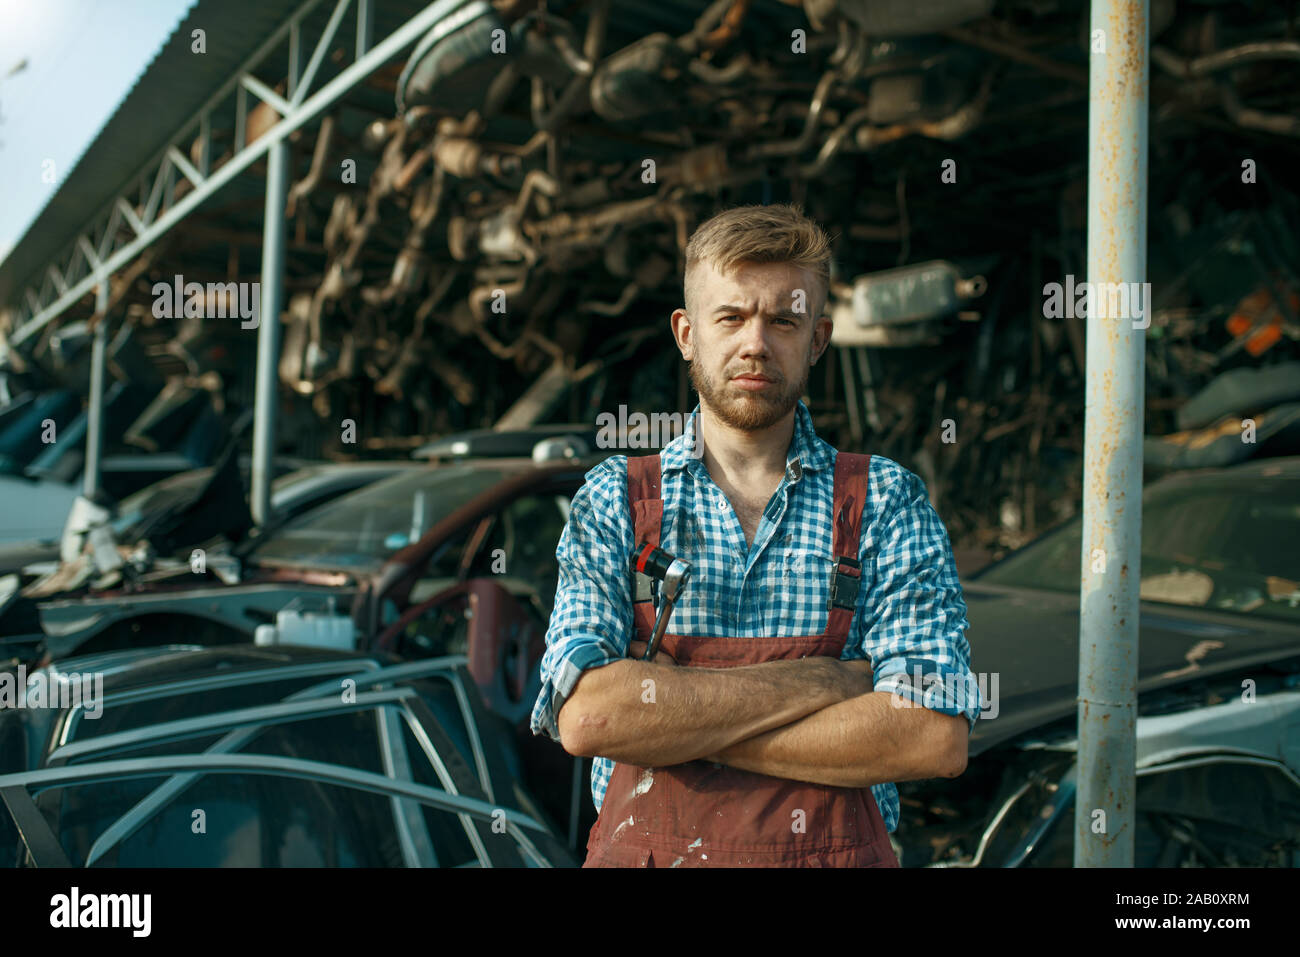 Homme mécanicien à la pile de voitures sur junkyard Banque D'Images